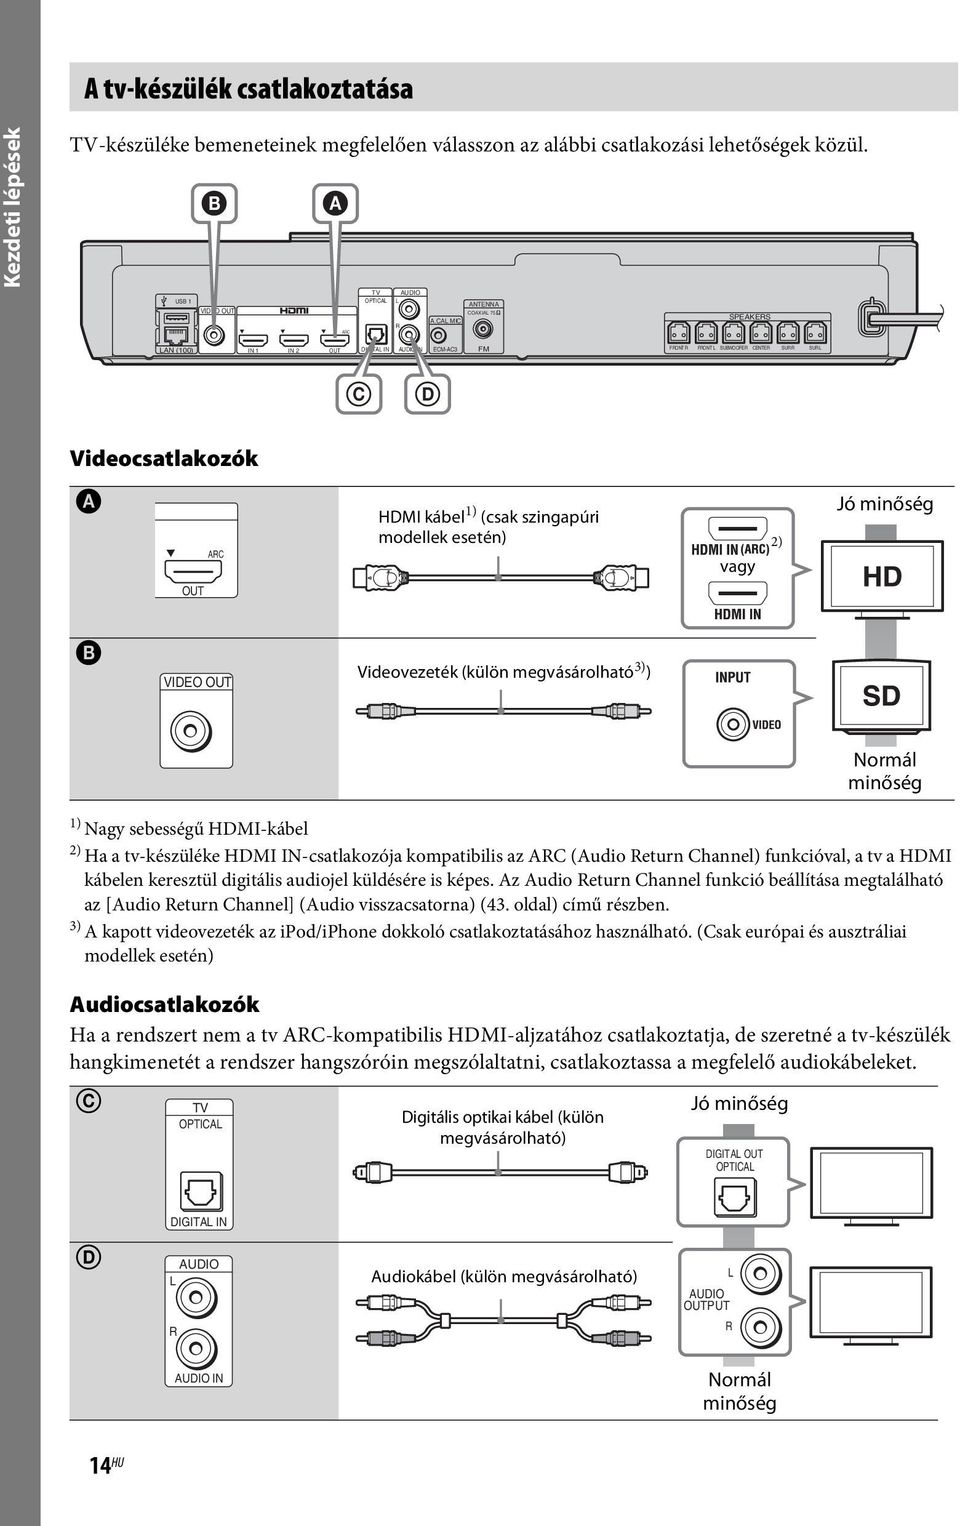 CAL MIC R ARC LAN (100) IN 1 IN 2 OUT DIGITAL IN AUDIO IN ECM-AC3 FM FRONT R FRONT L SUBWOOFER CENTER SUR R SUR L C D Videocsatlakozók A ARC HDMI kábel 1) (csak szingapúri modellek esetén) vagy 2) Jó